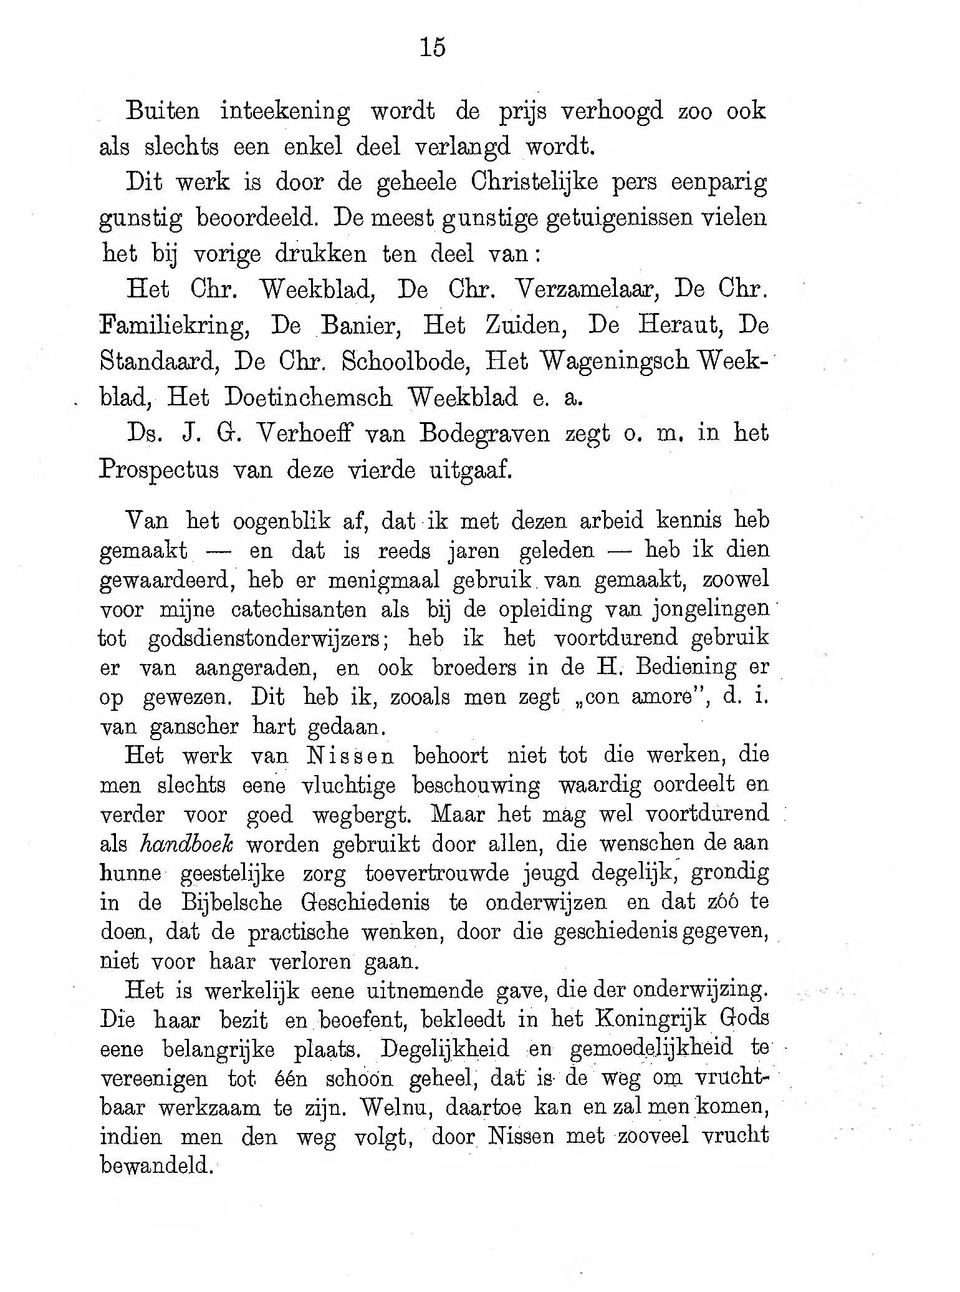 Schoolbode, Het Wageningsch Weekblad, Het Doetinchemsch Weekblad e. a. Ds. J. G. Verhoef van Bodegraven zegt o. m. in het Prospectus van deze vierde uitgaaf.